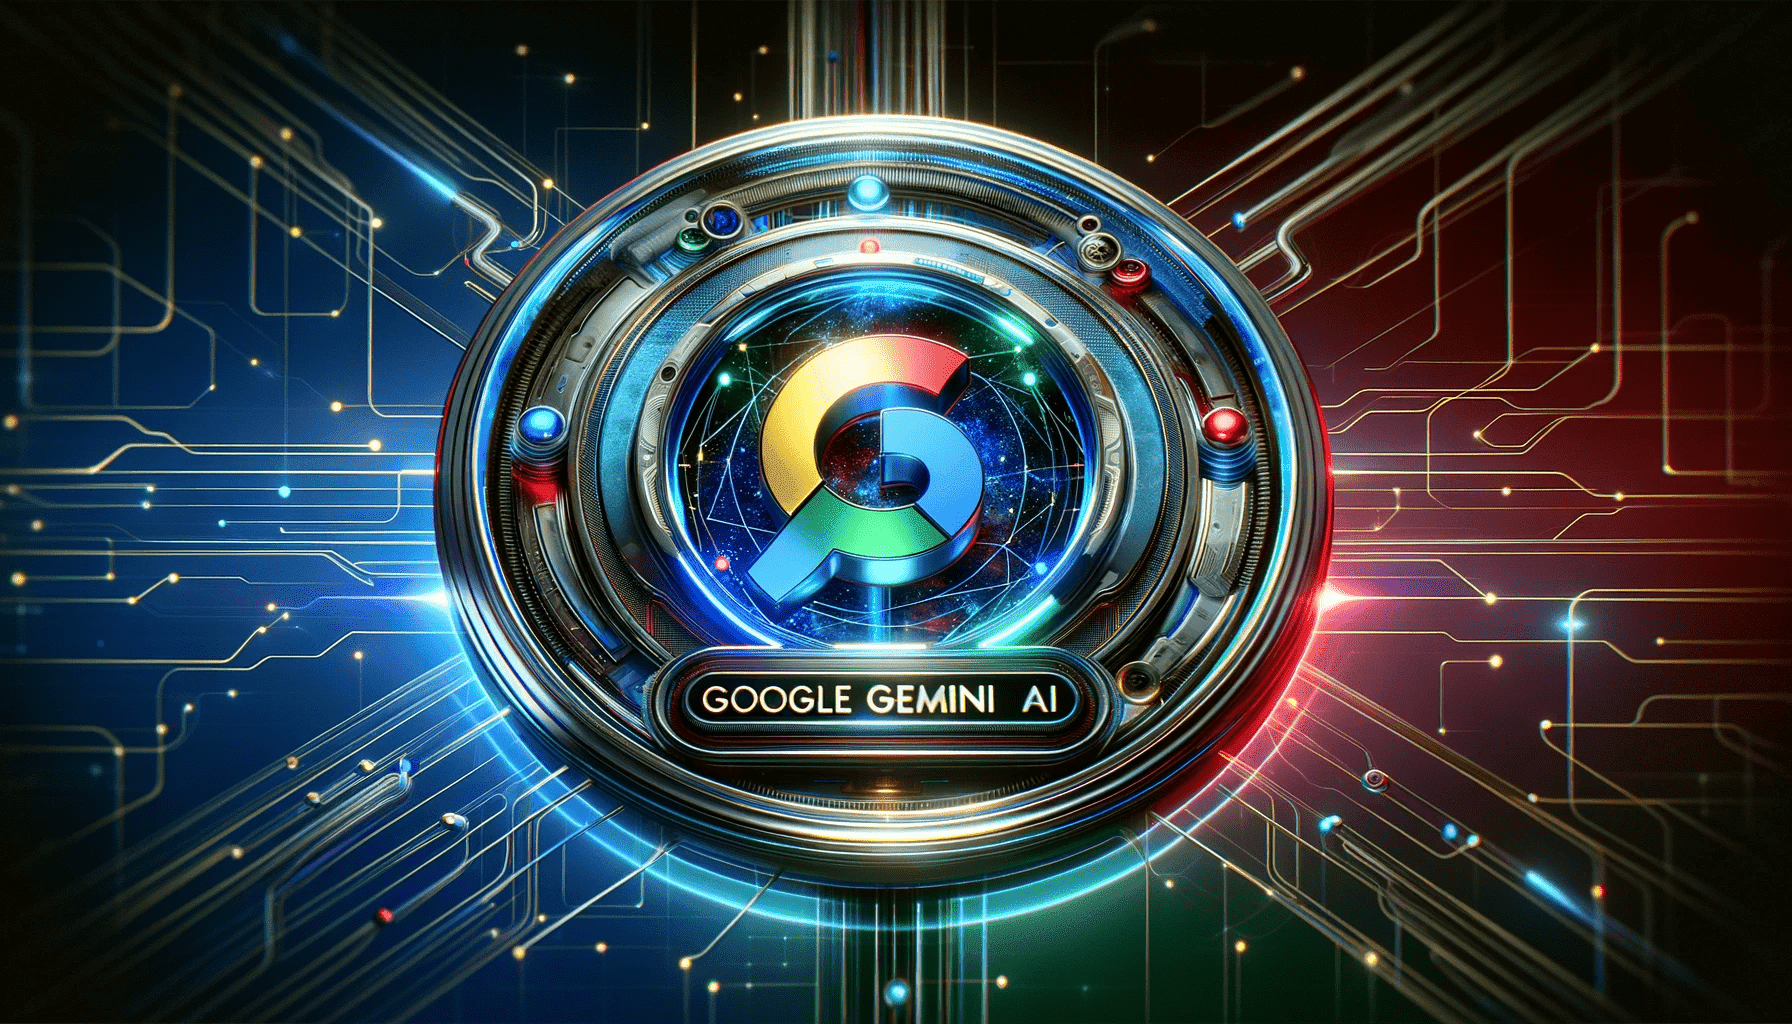 Grupul Alphabet, care deţine Google, a lansat mult aşteptatul său model de inteligenţă artificială Gemini